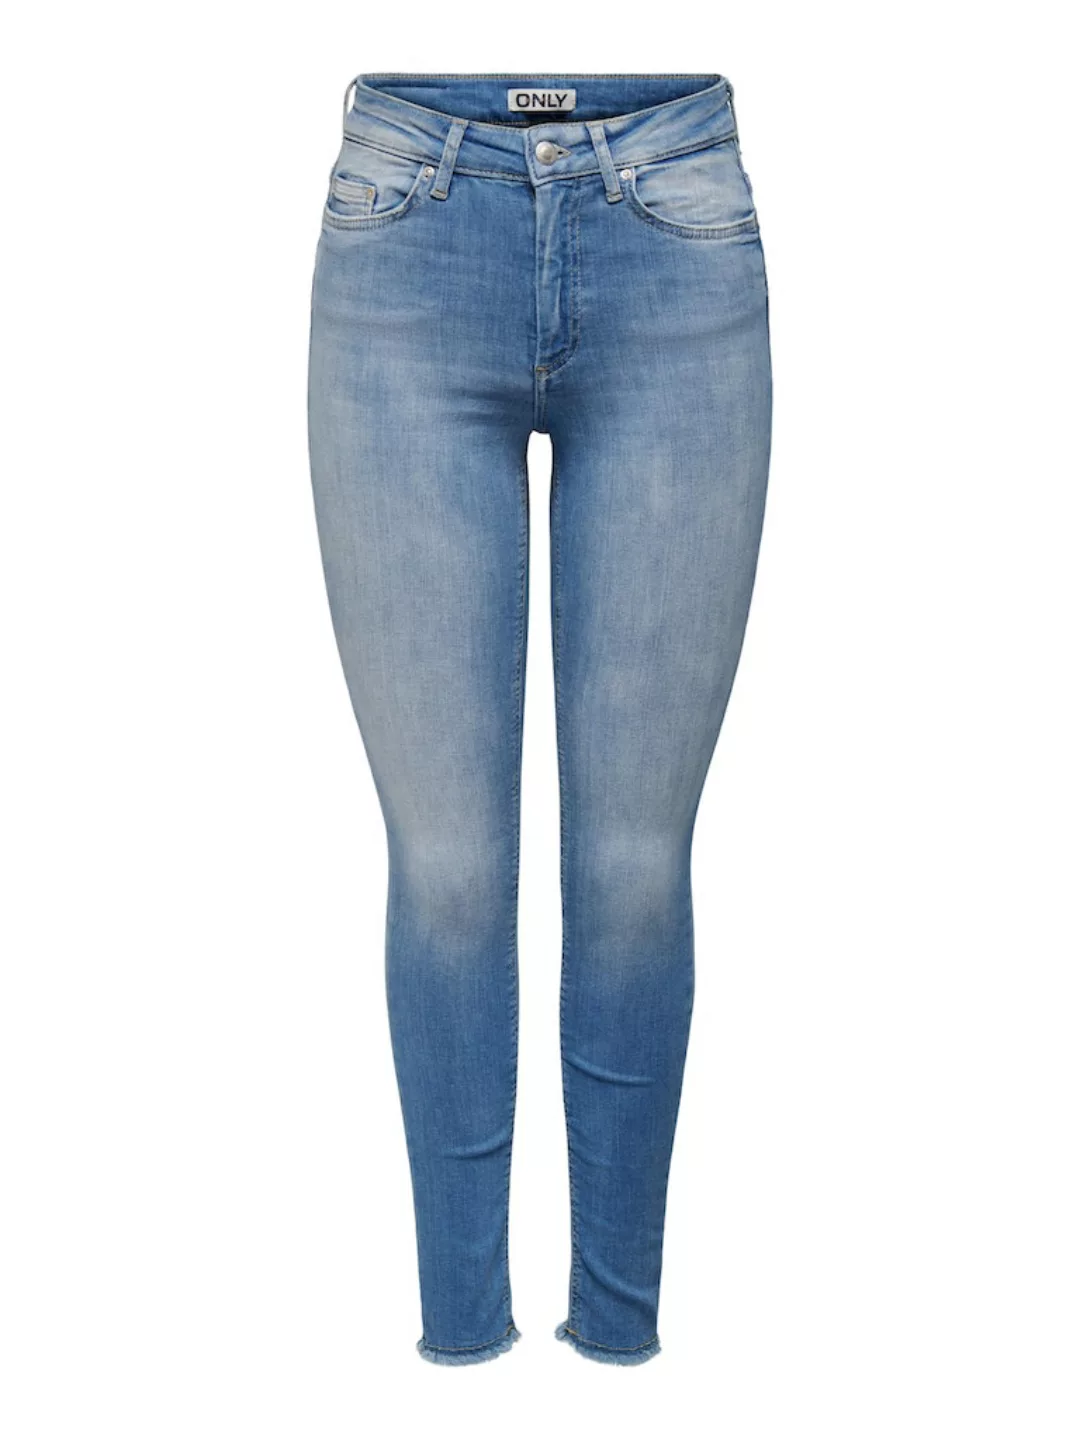 Only Damen Jeans 15287165 günstig online kaufen